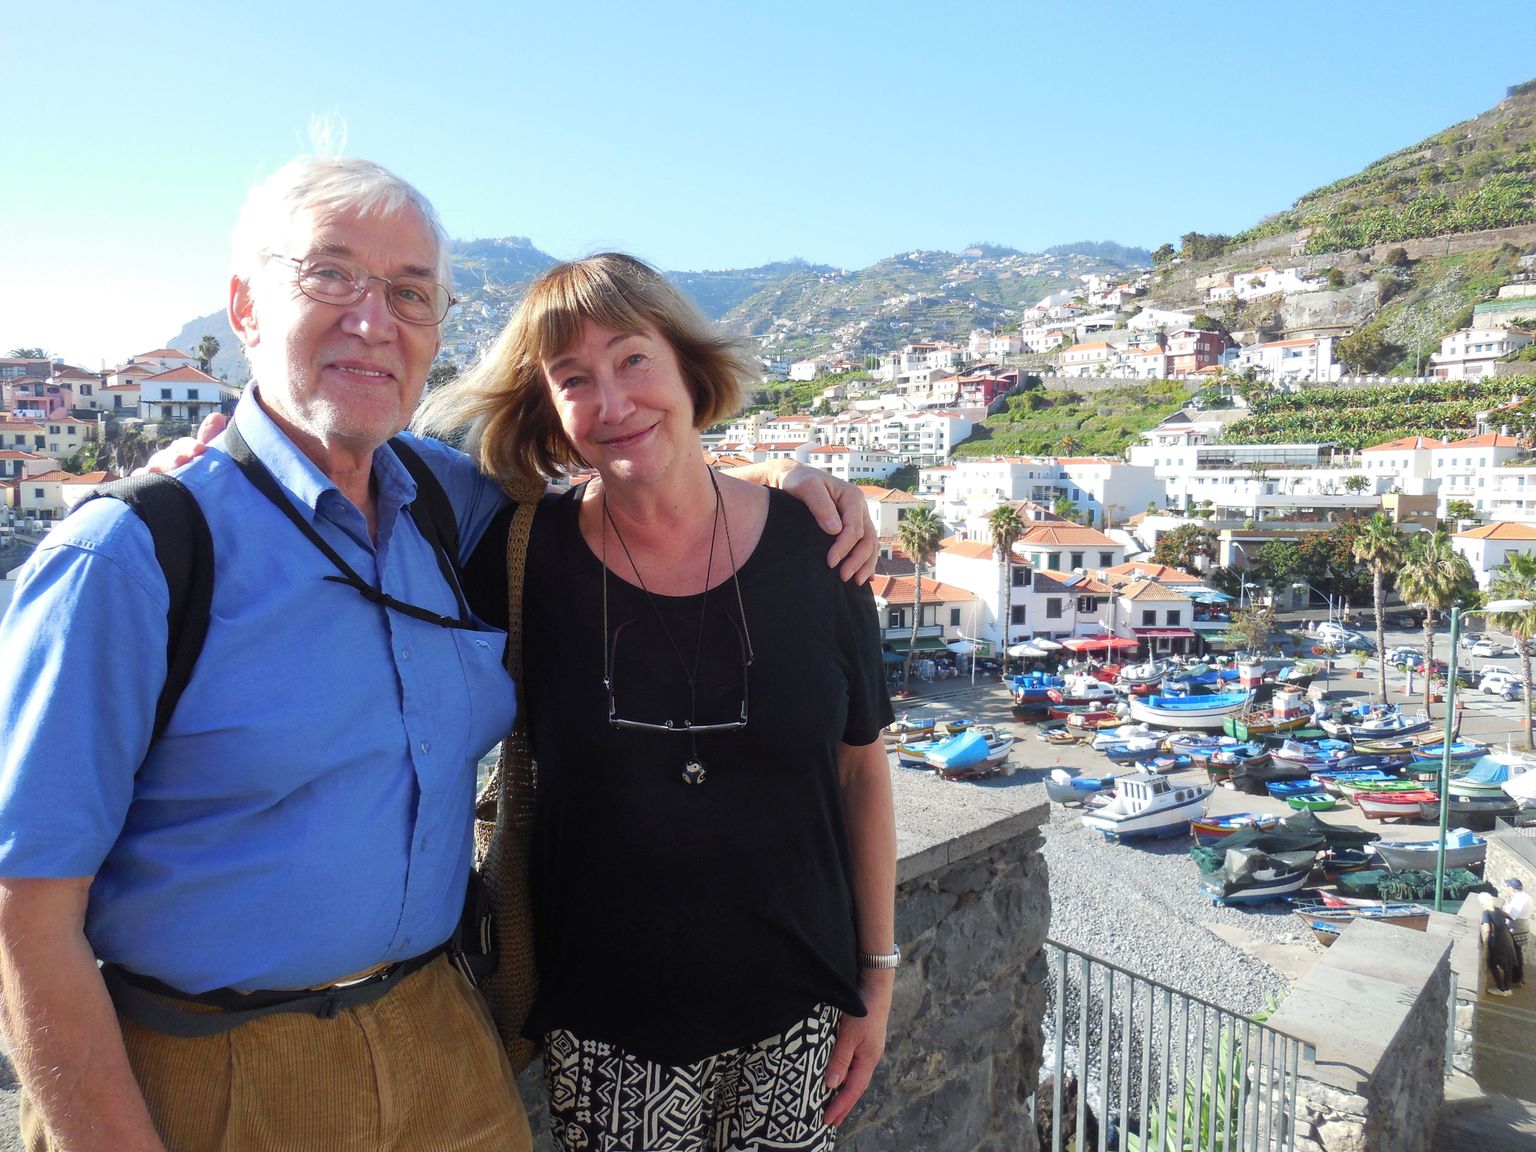 Elutööpreemia uudisest sai Jaan Kaplinski teada Madeiral, kus ta oma naise Tiia Toometiga puhkab.